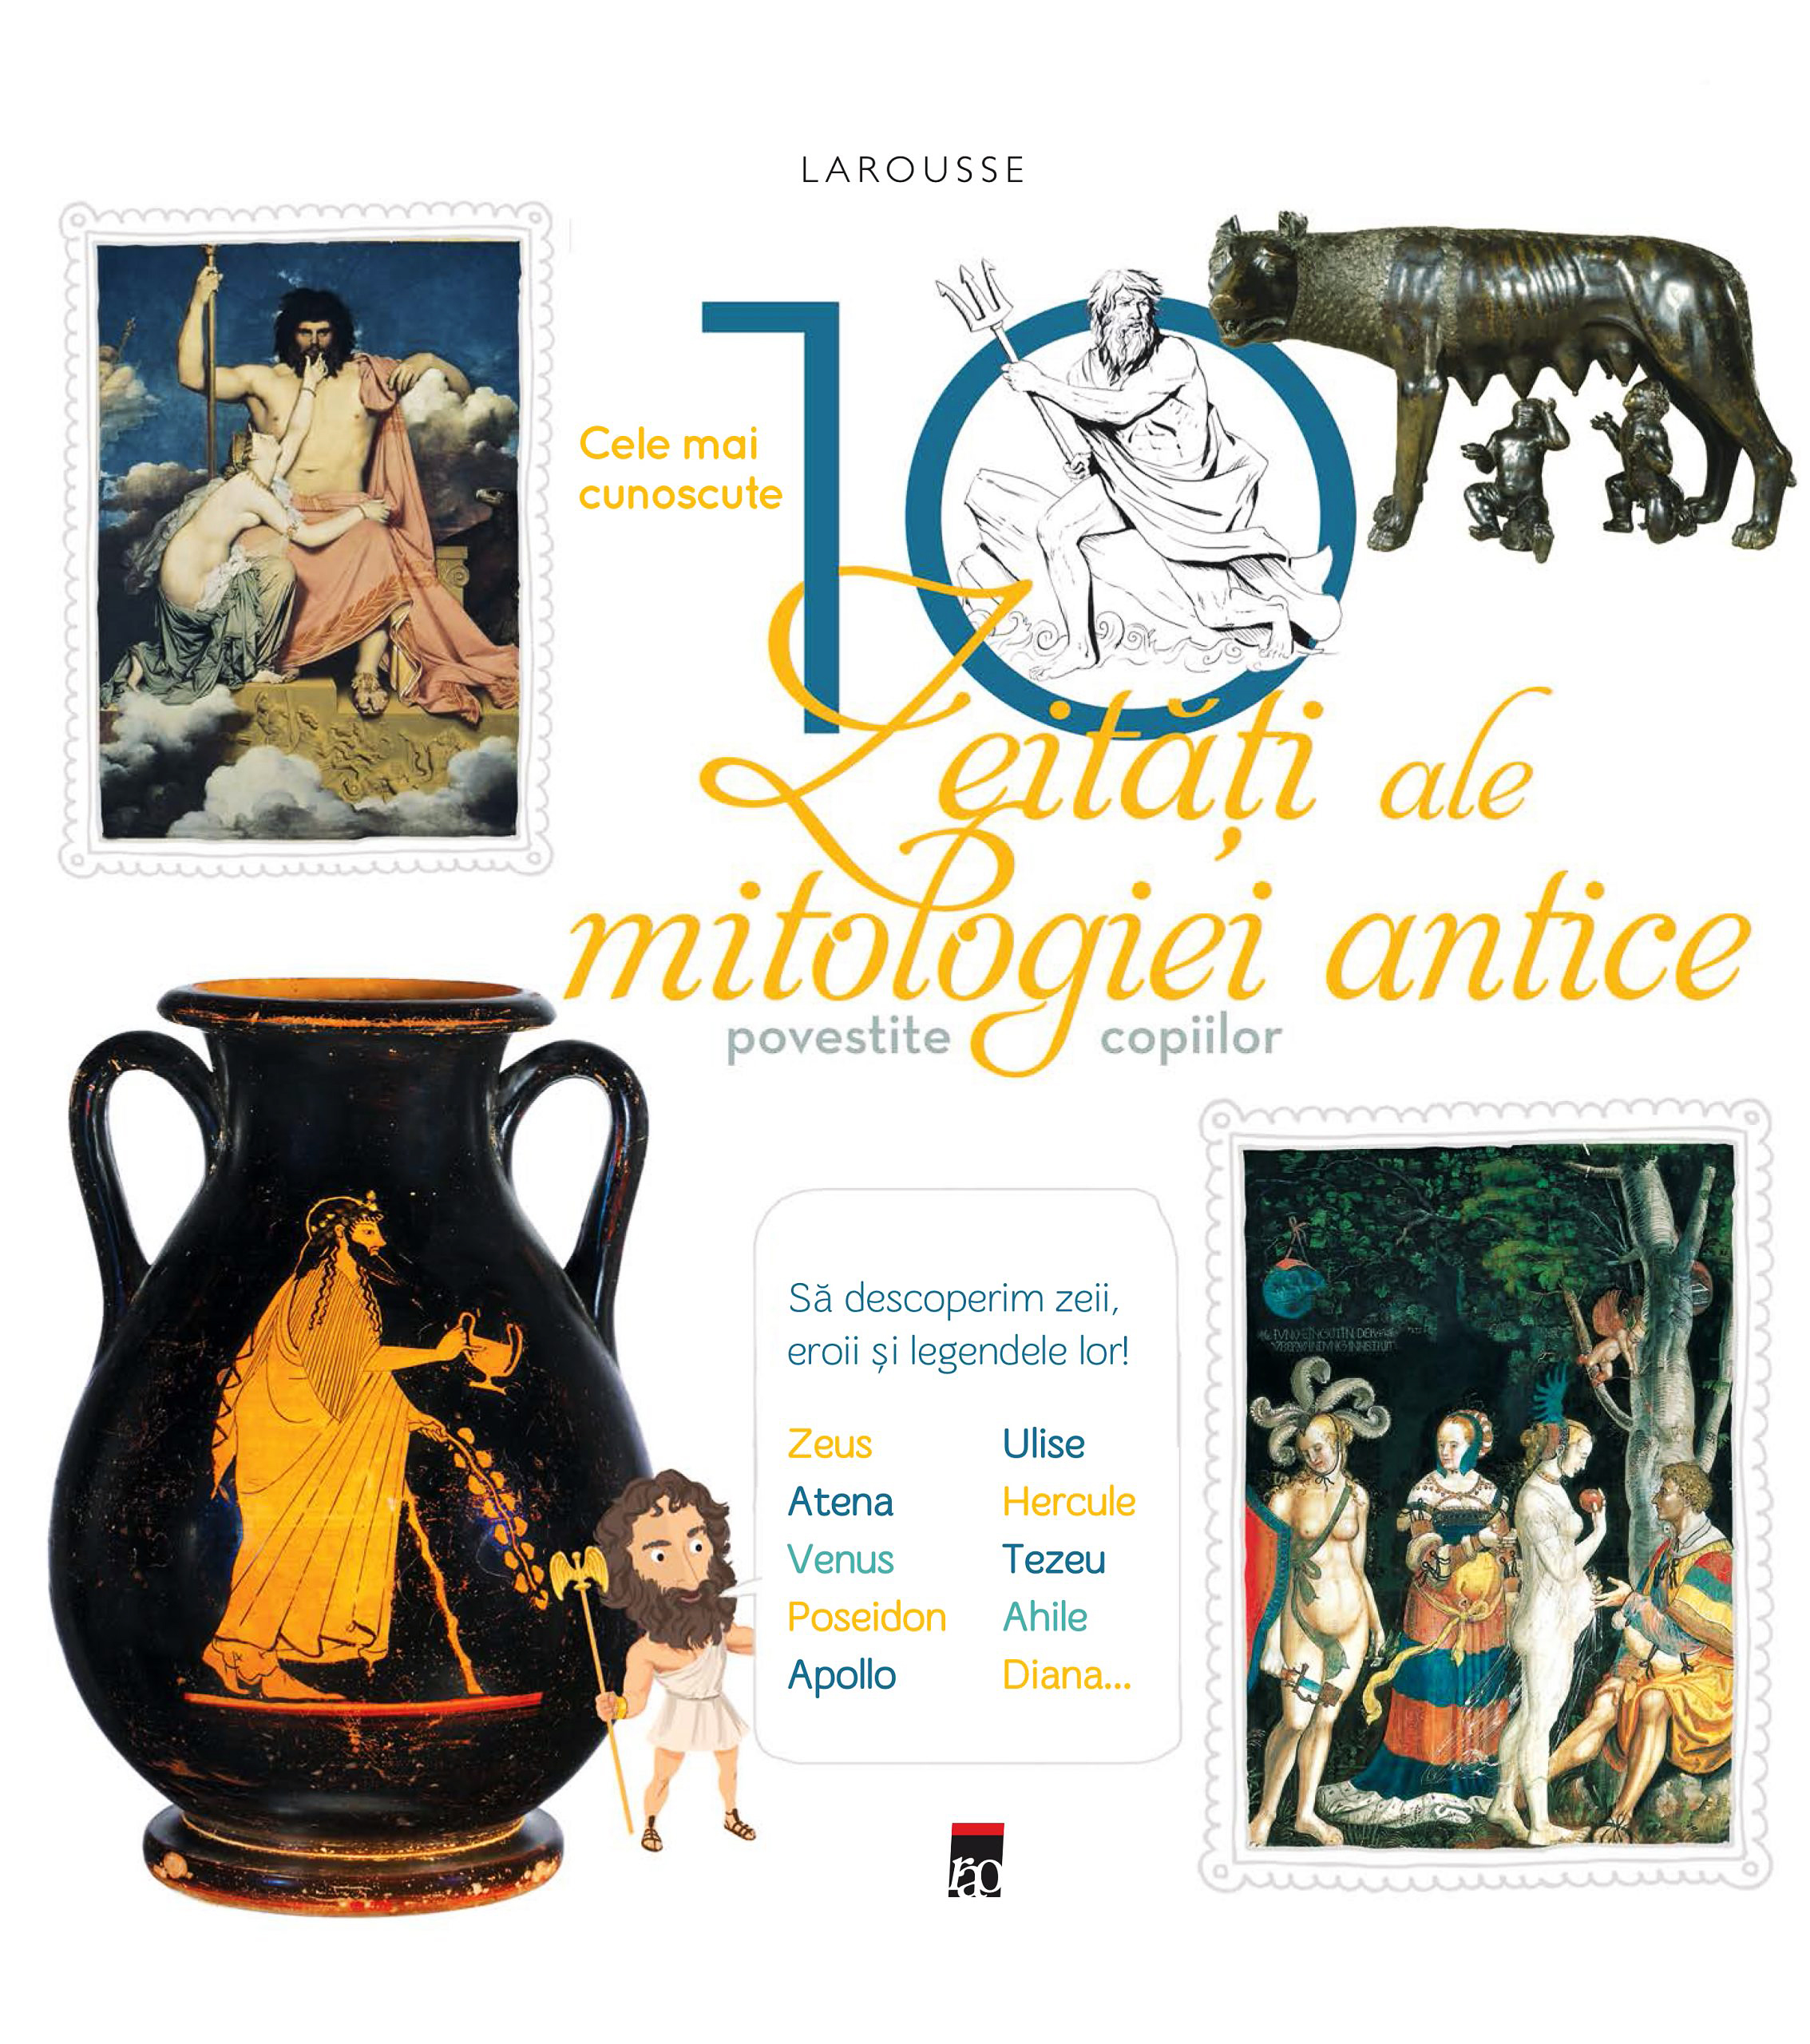 Larousse. Cele mai cunoscute 10 zeitati ale mitologiei antice povestite copiilor | carturesti.ro Bibliografie scolara